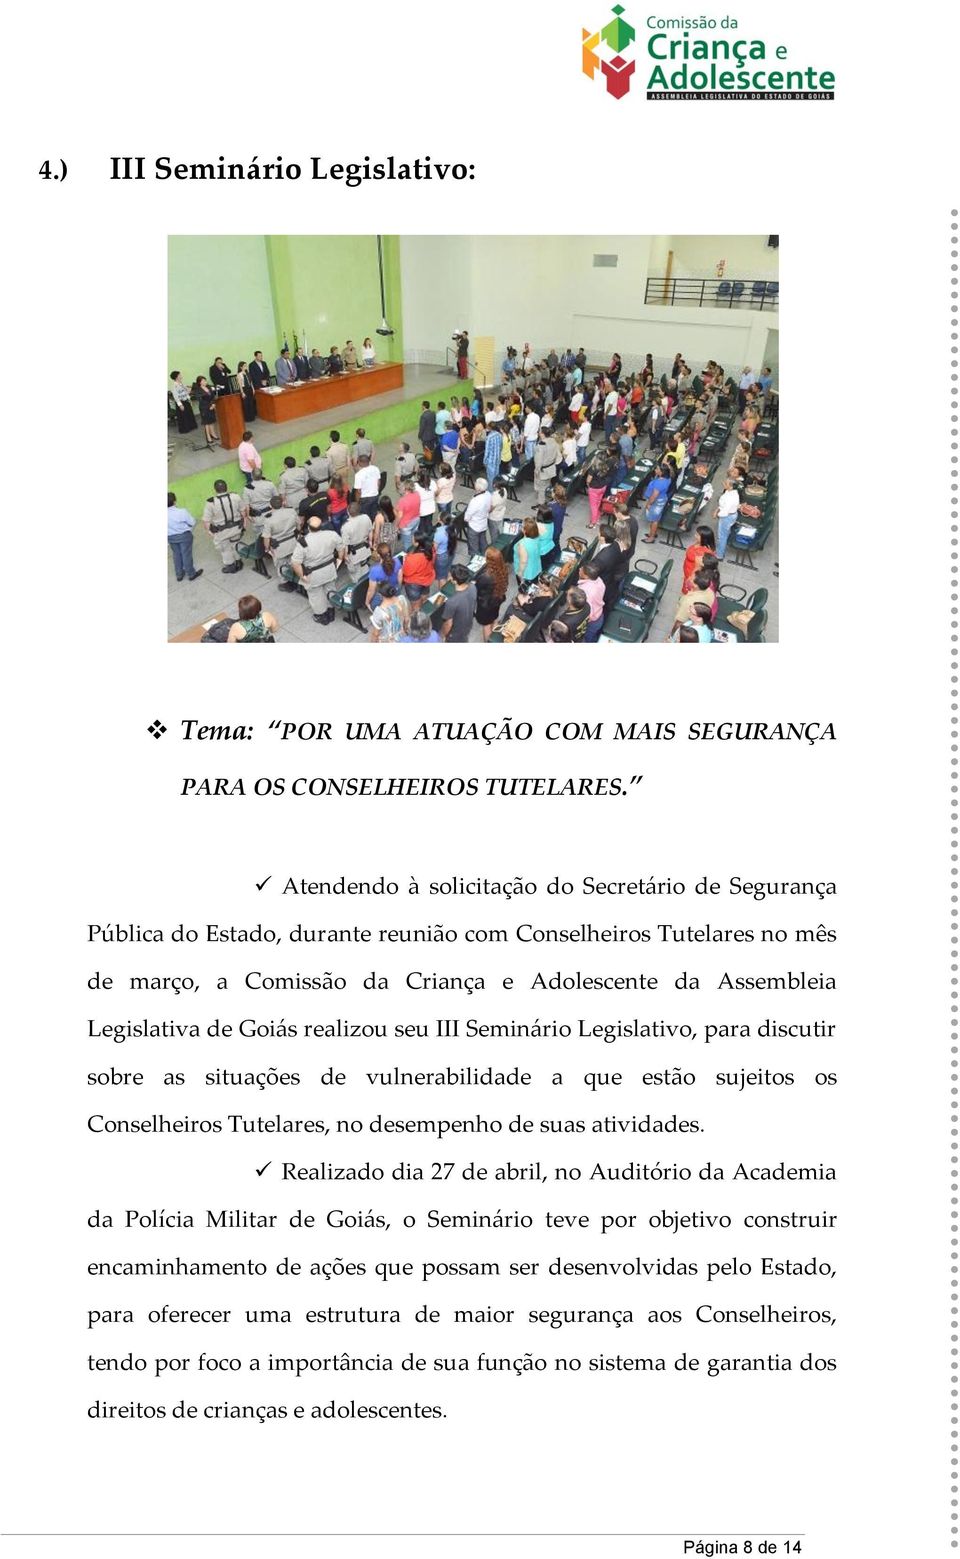 Goiás realizou seu III Seminário Legislativo, para discutir sobre as situações de vulnerabilidade a que estão sujeitos os Conselheiros Tutelares, no desempenho de suas atividades.